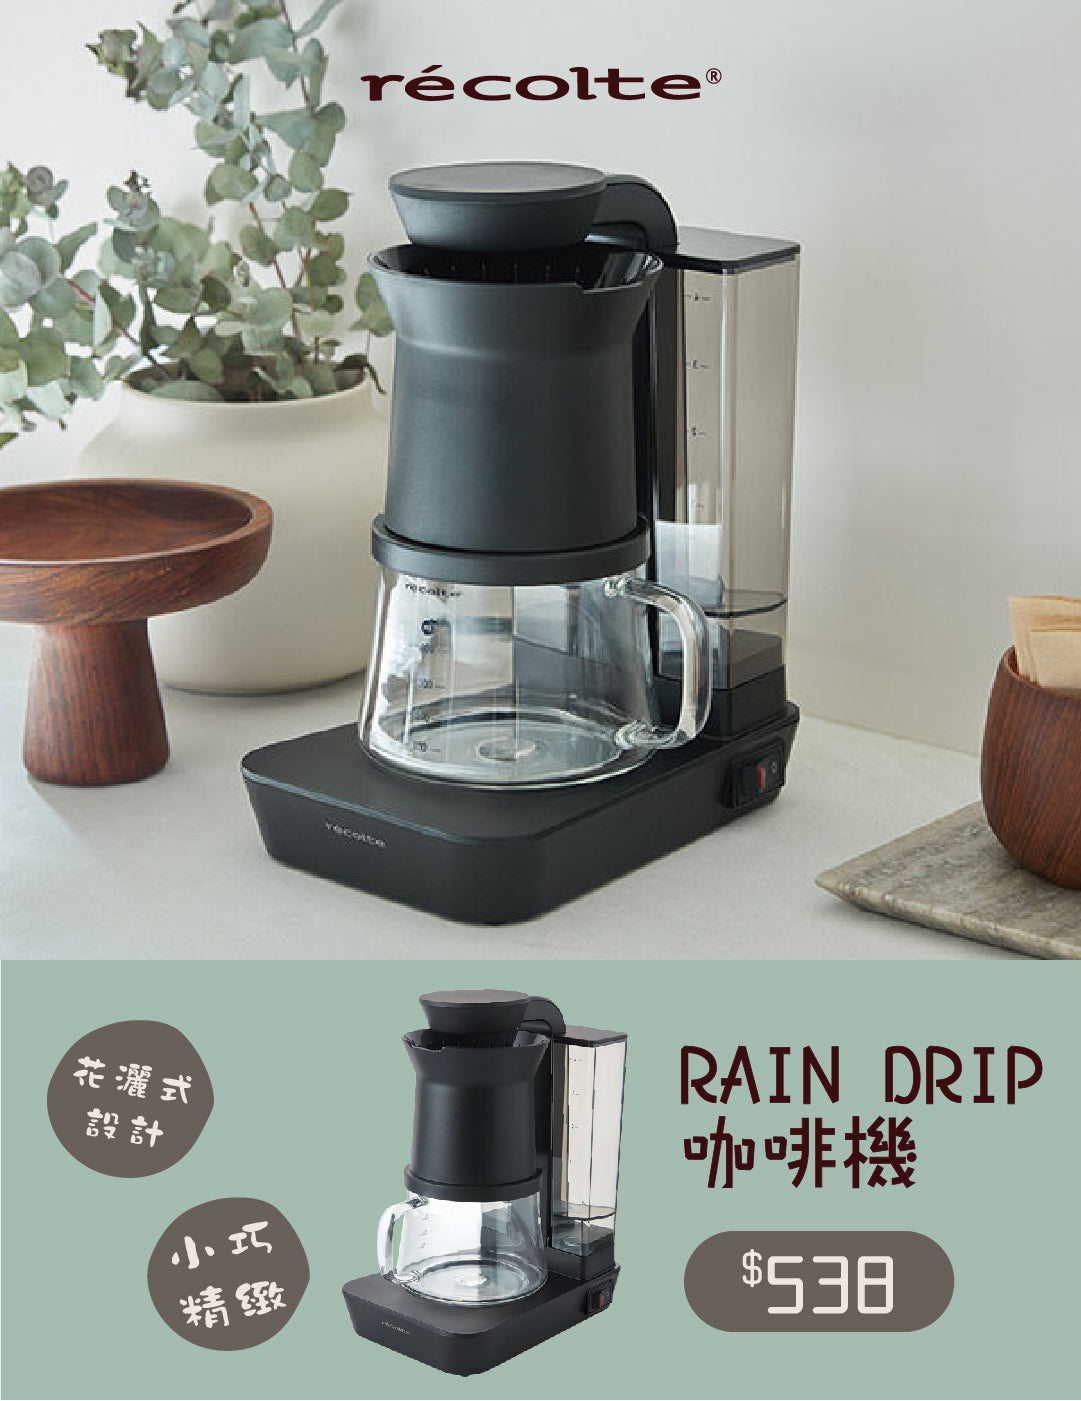 Recolte Rain Drip Coffee Maker